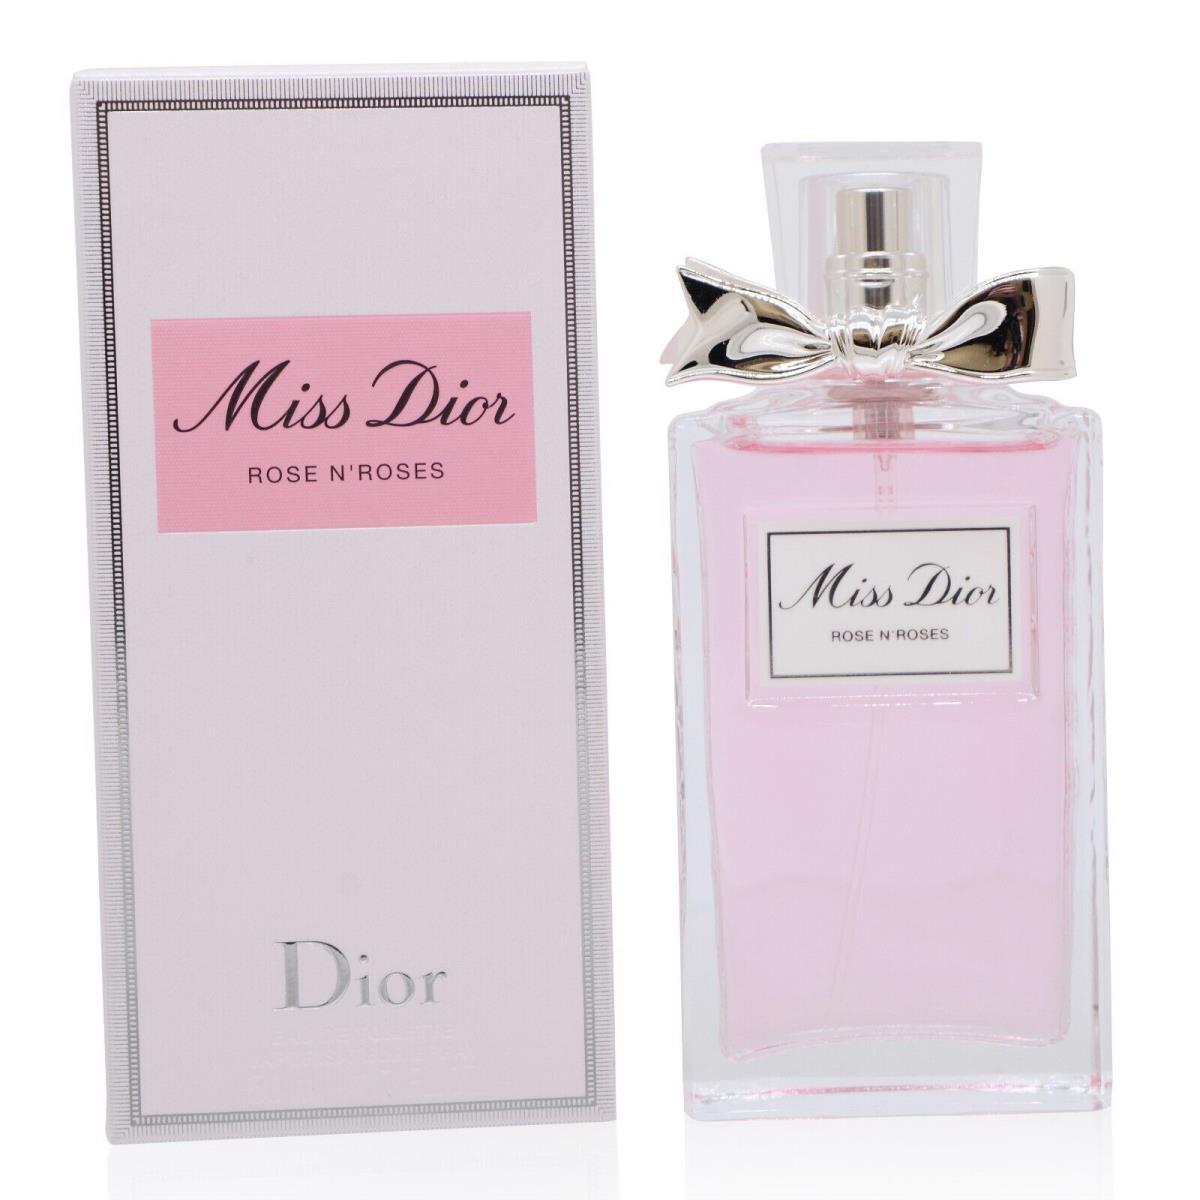 Miss Dior Rose Nroses Edt Spray 1.7 OZ Women